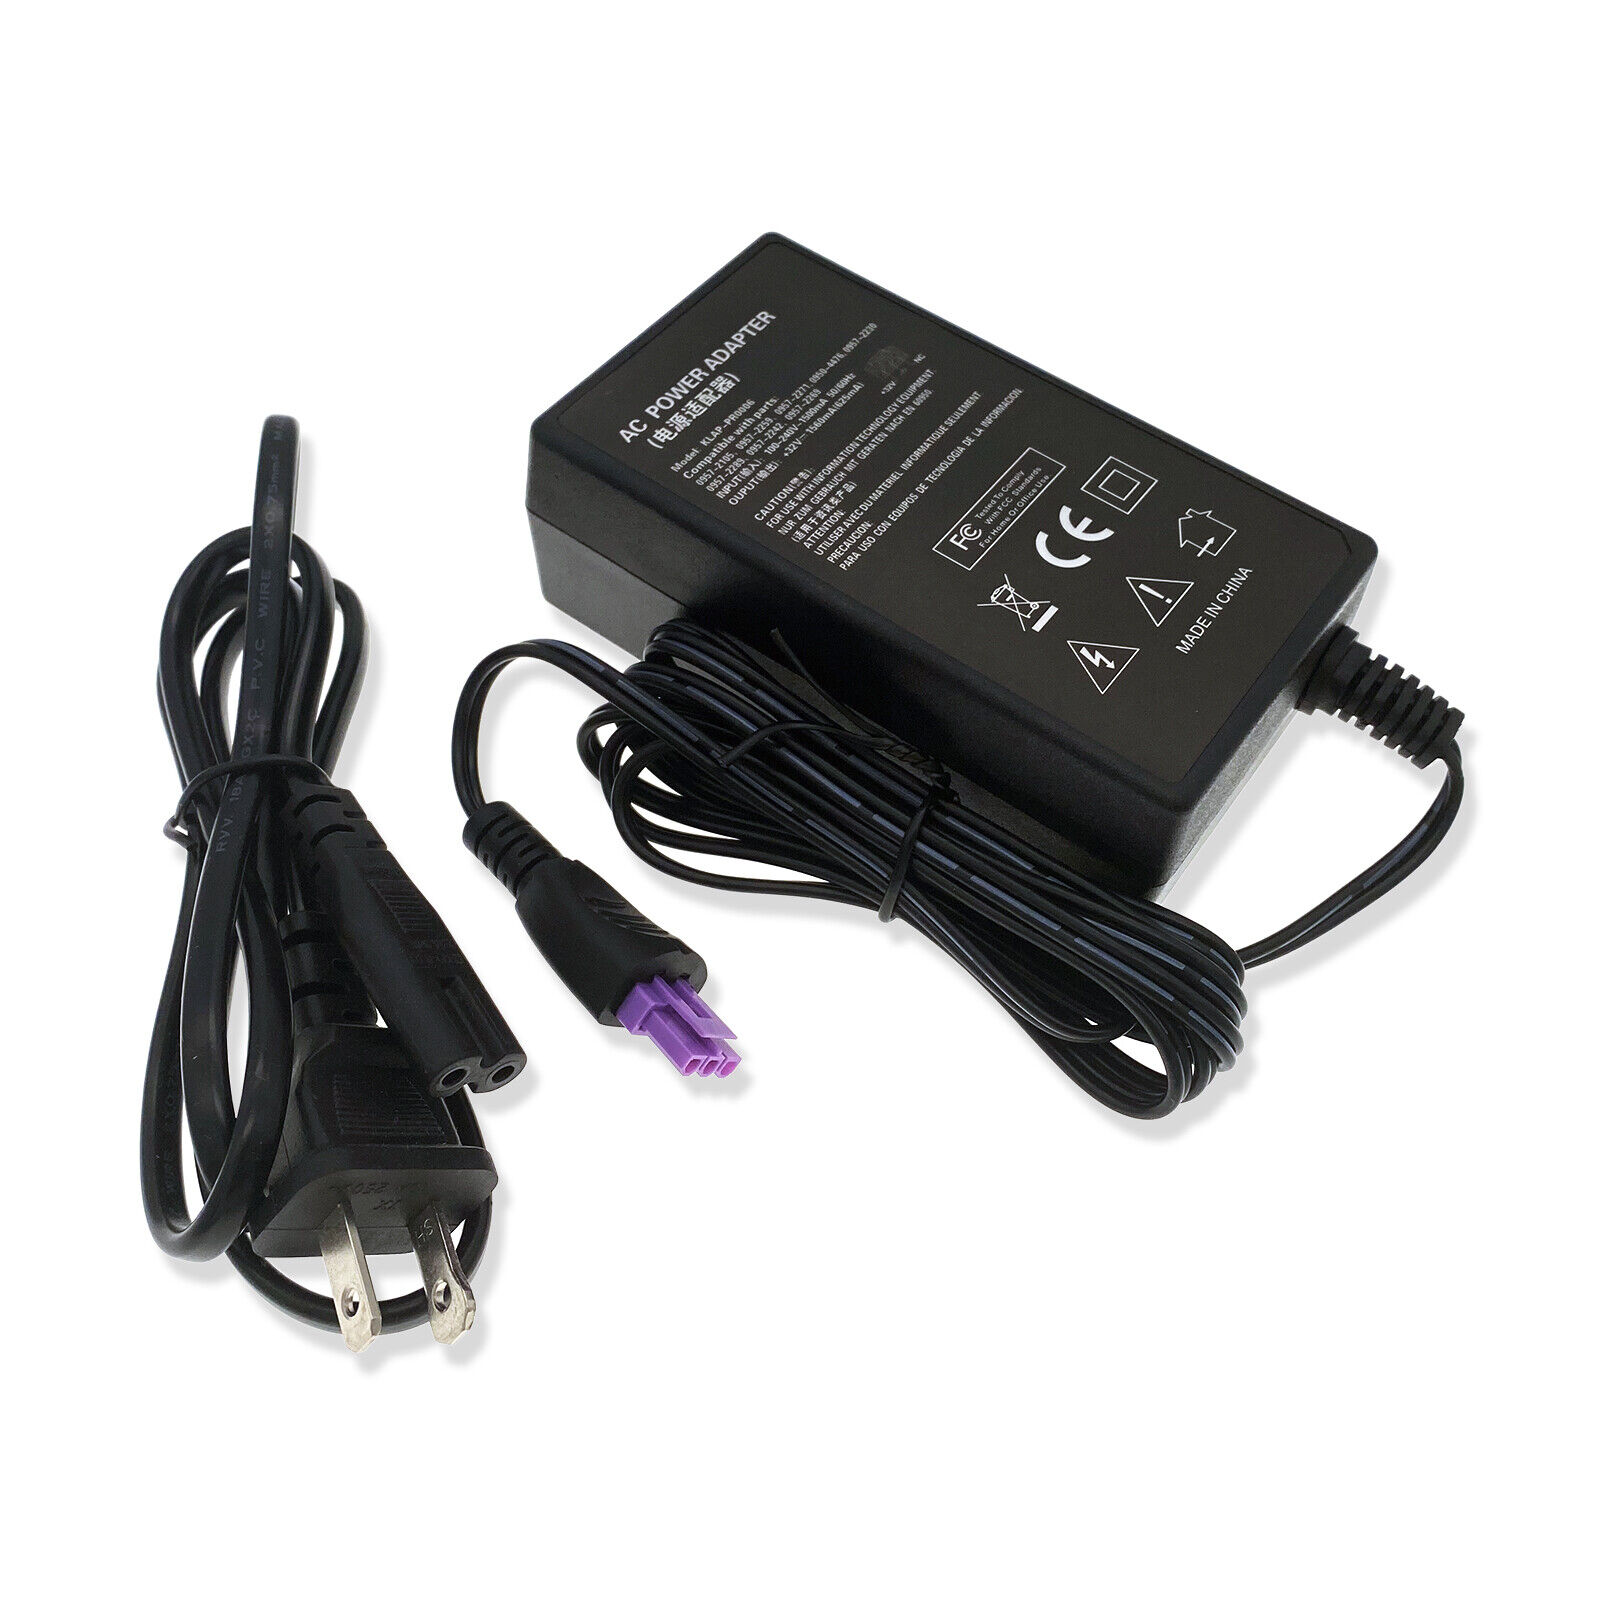 AC Adapter For HP Deskjet 5600 F4480 F4483 F4488 F4440 F4435 CB780A Power Supply